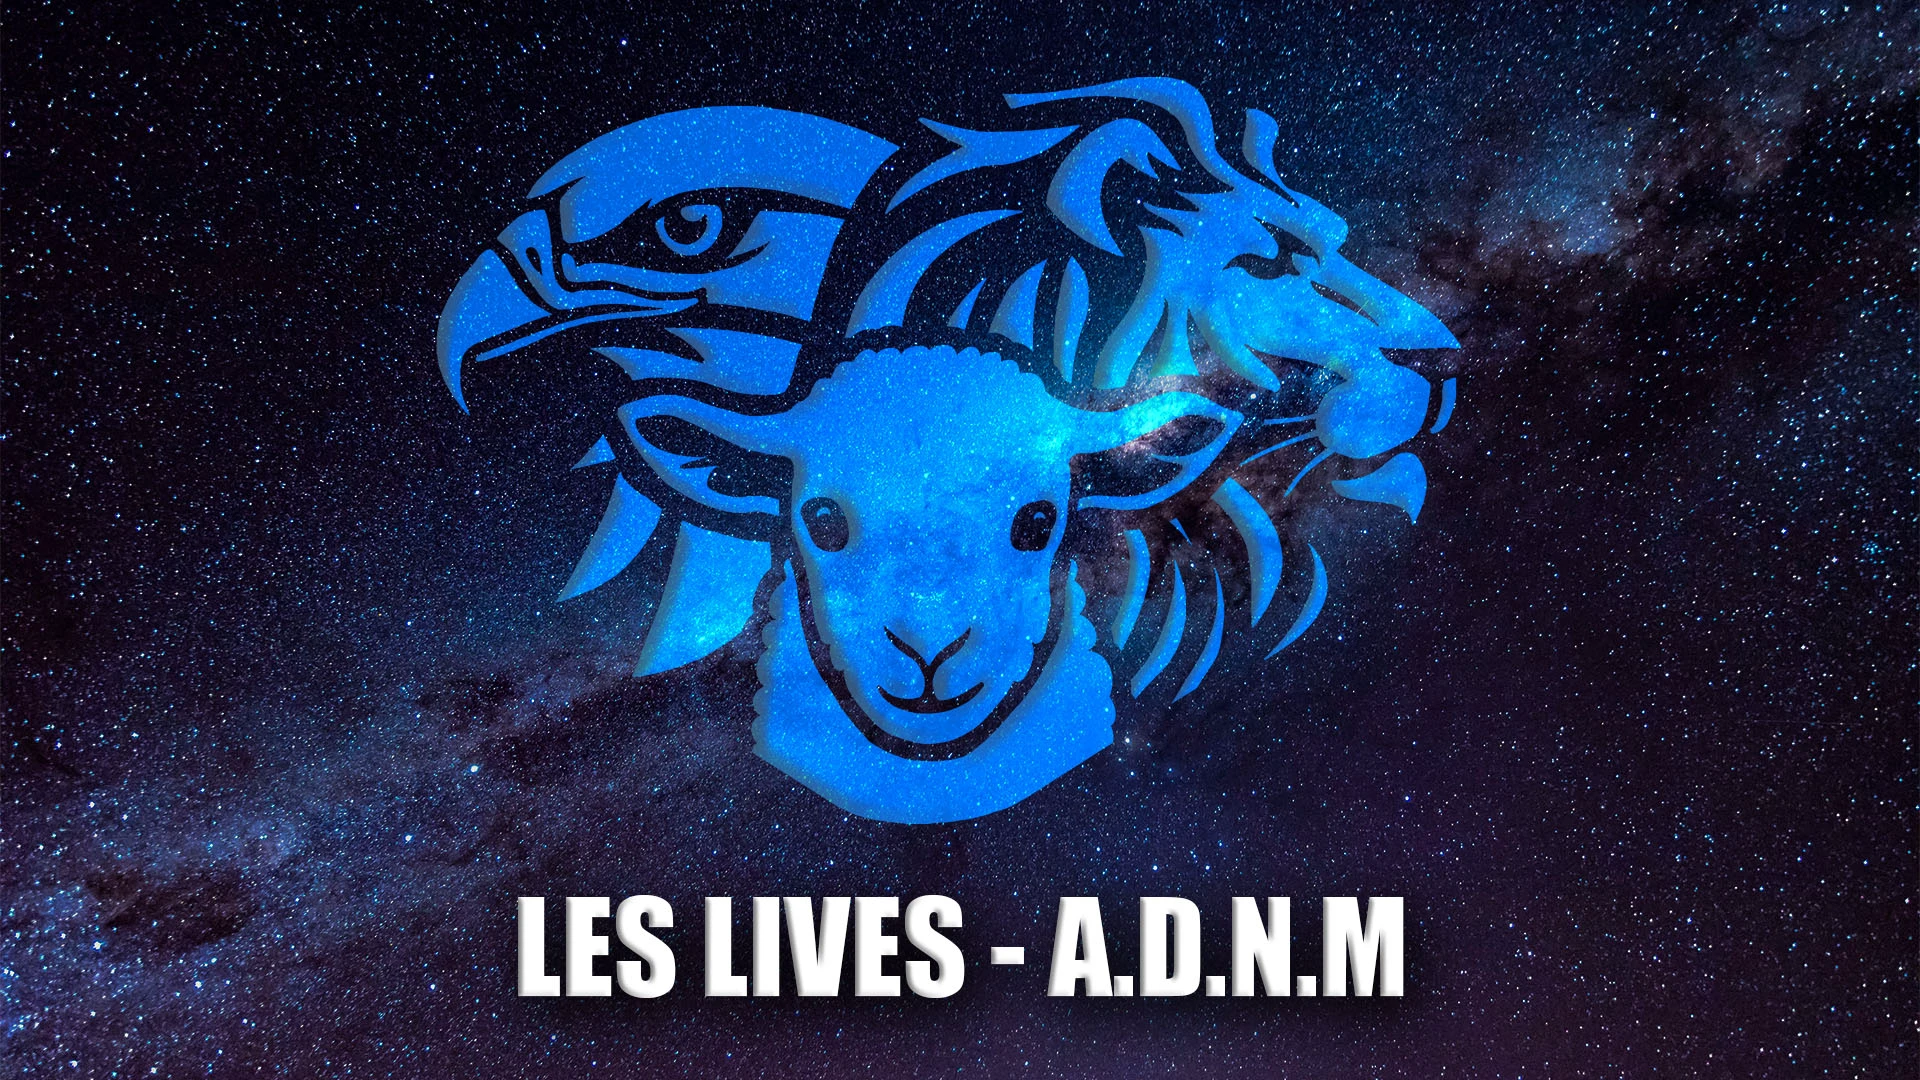 Les Lives – A.D.N.M